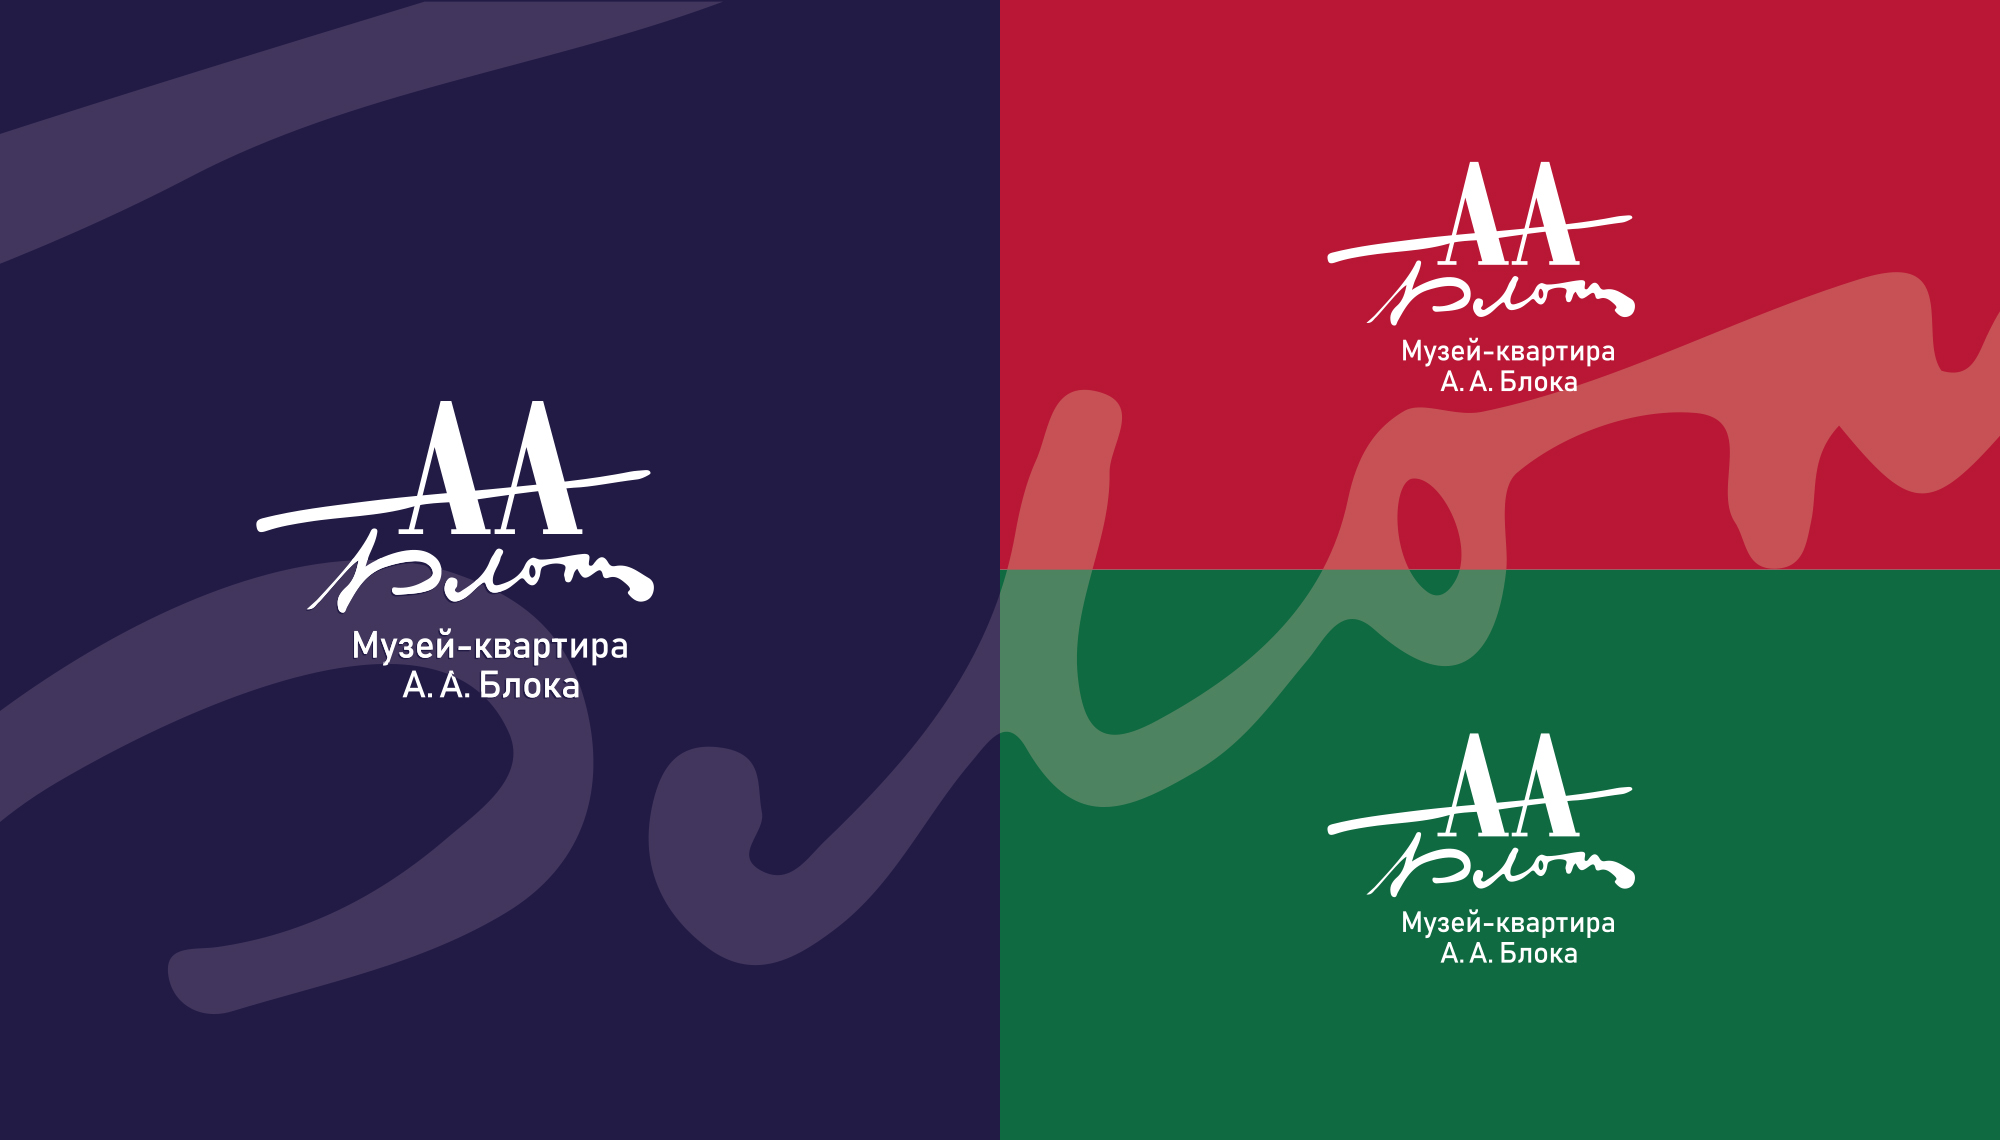  Вариант №2. Дизайн-концепция логотипа и фирменного стиля для музея Блока.